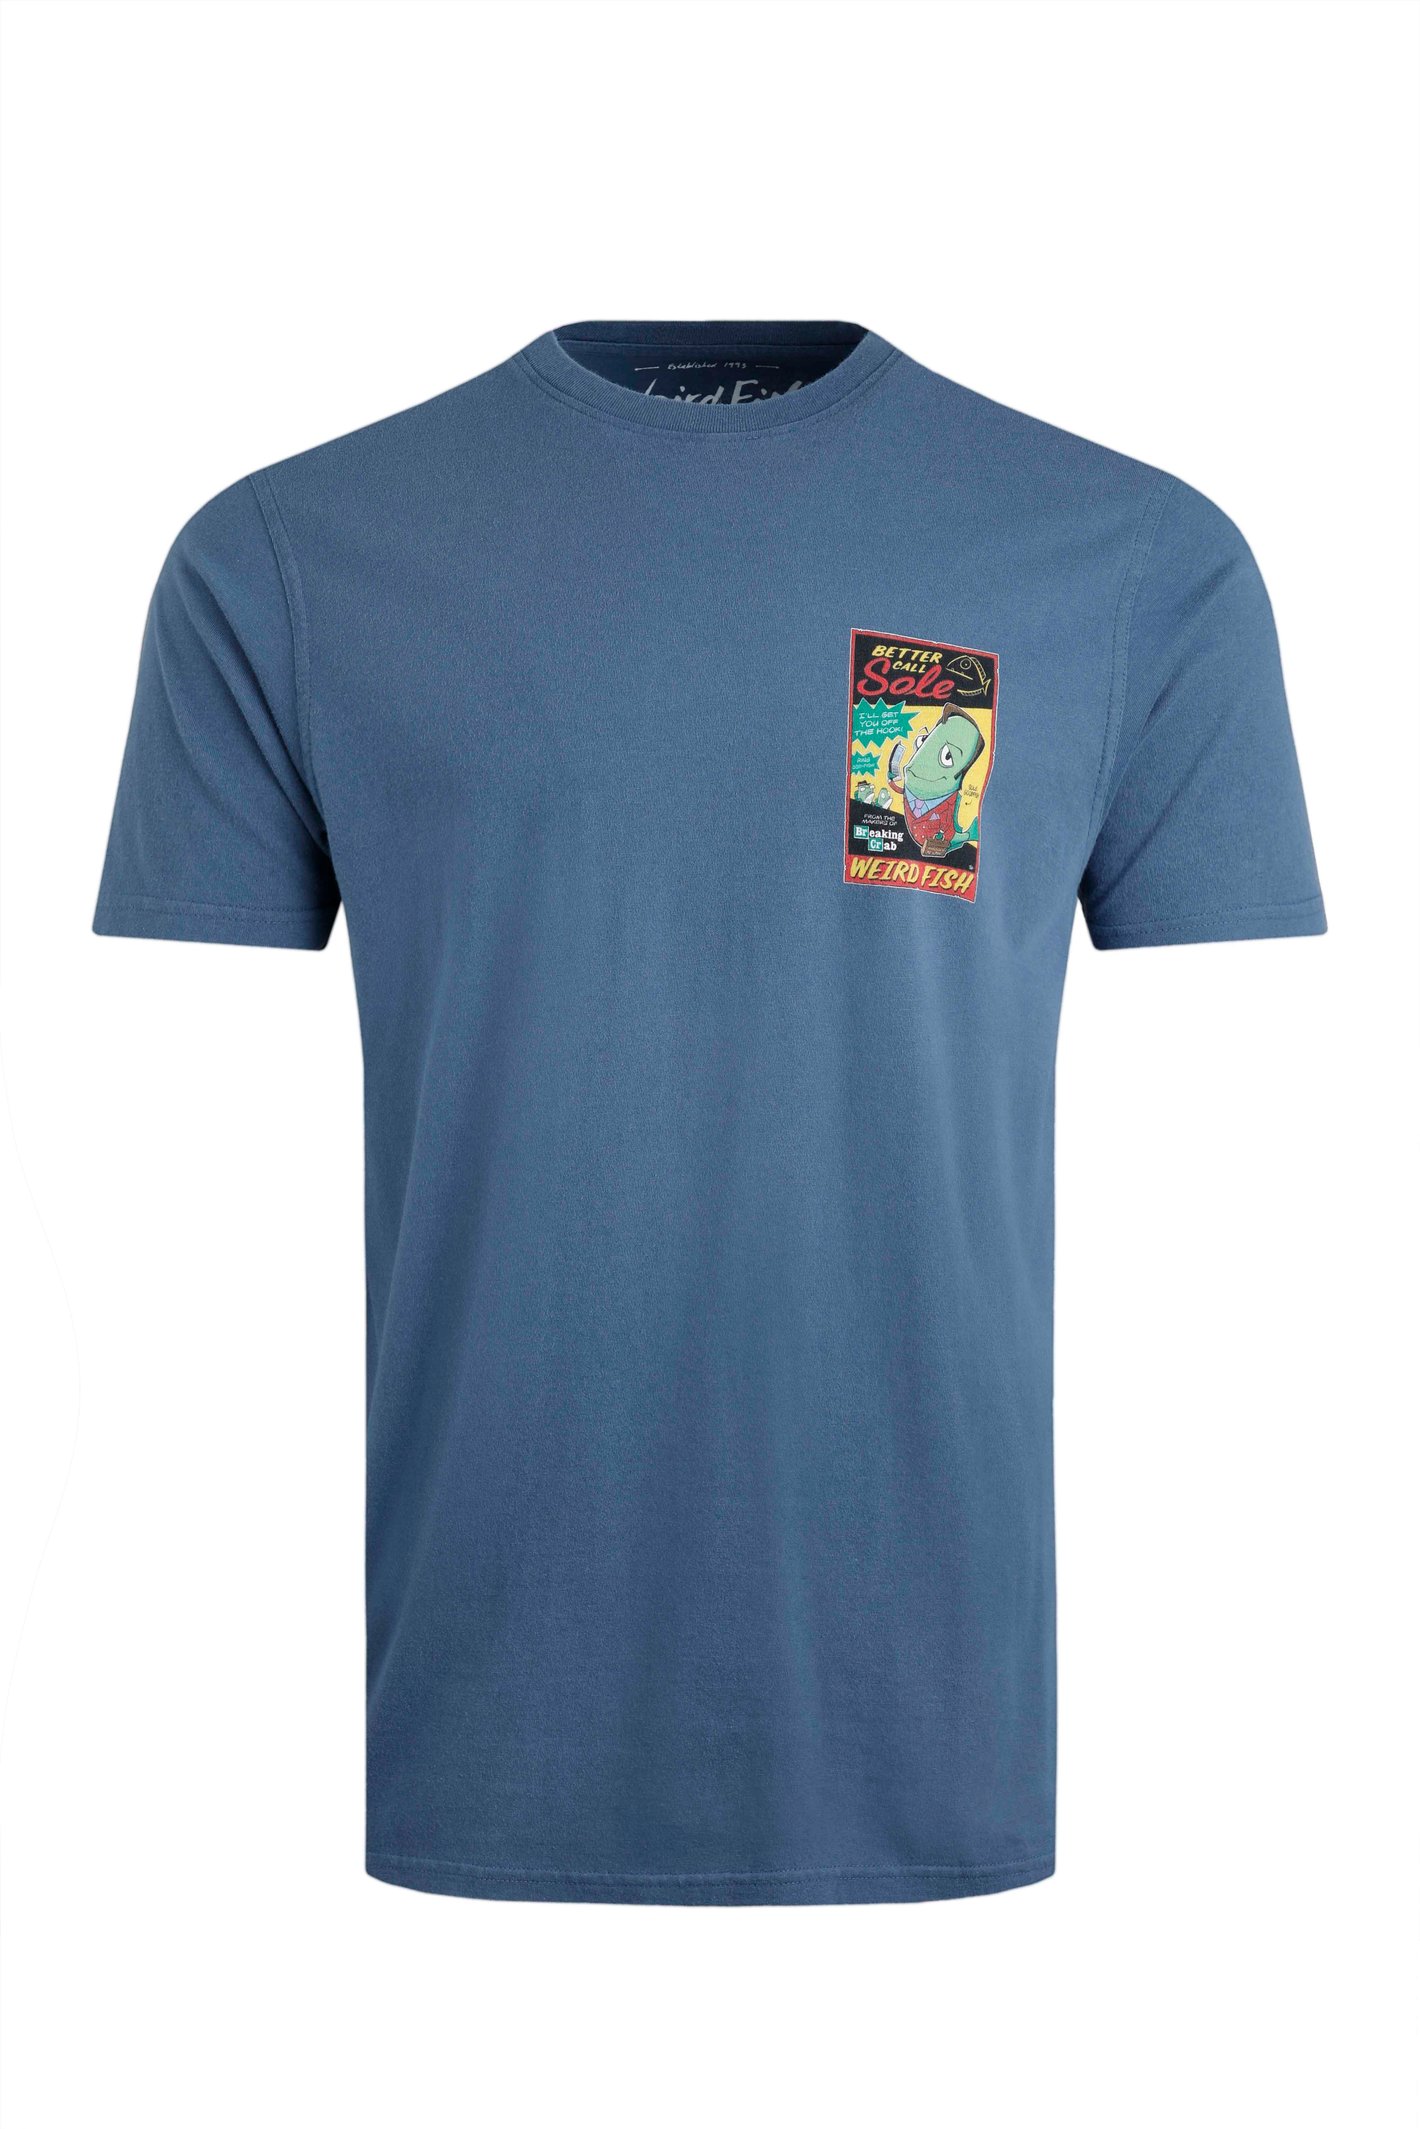 Weird Fish Call Sole Artist T-Shirt Ensign Blue Size S